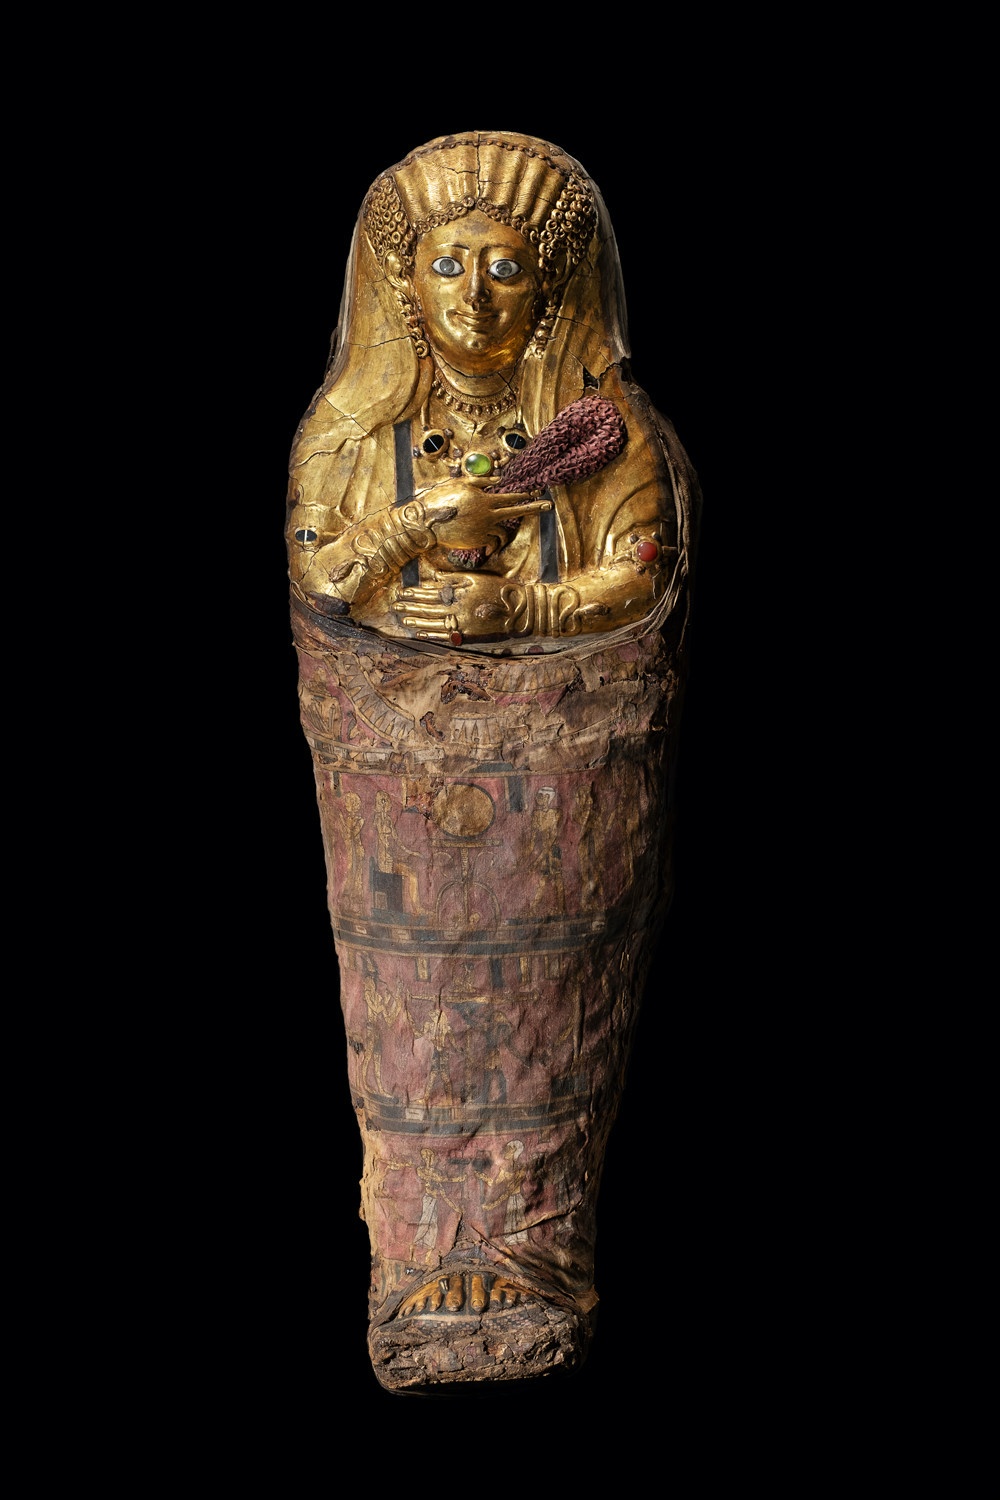 Golden Mummies of Egypt